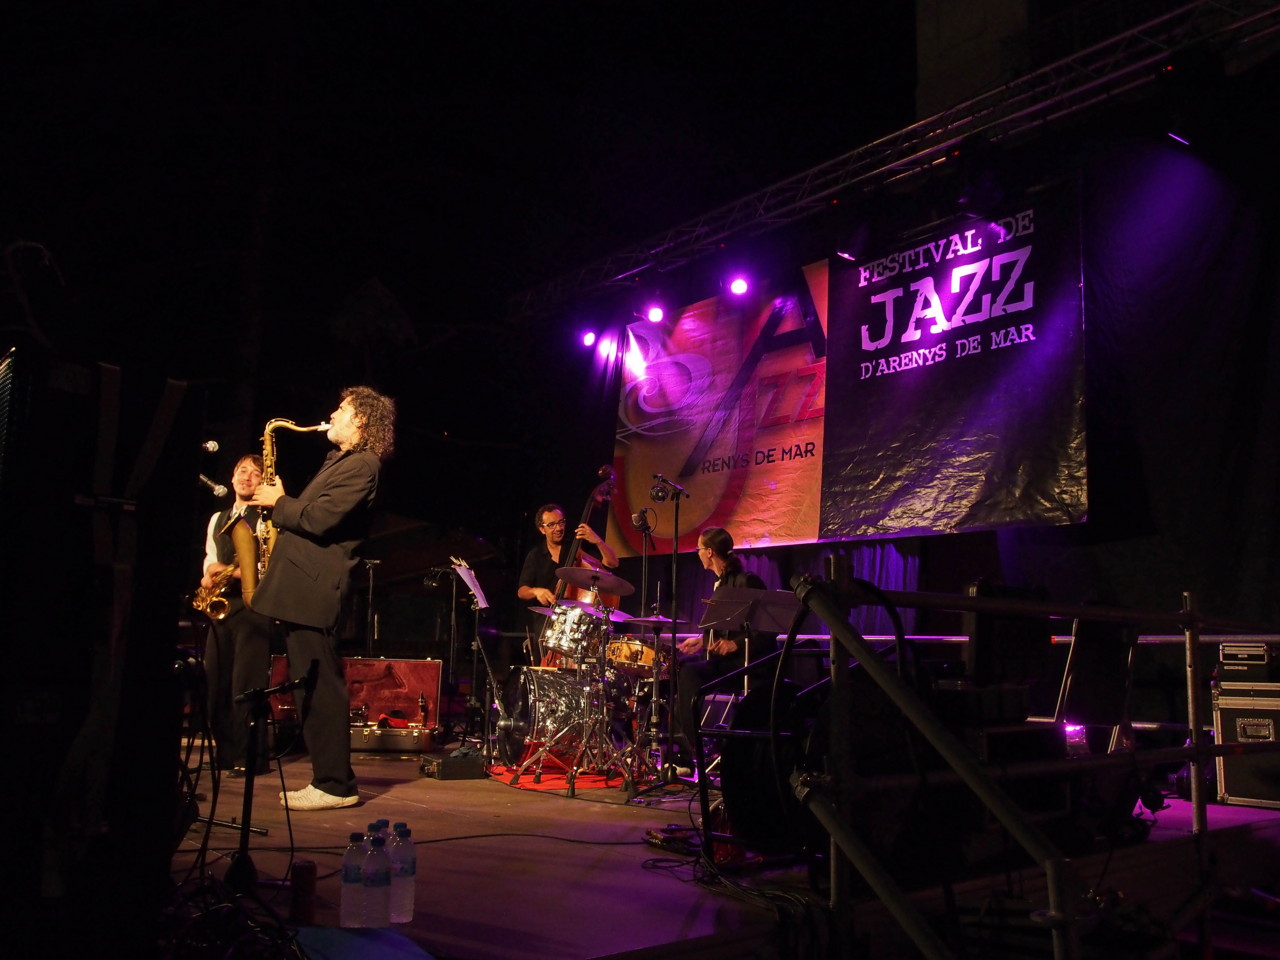 Imatges del 22 Festival de Jazz d'Arenys de Mar - 2013 - Foto 67523330